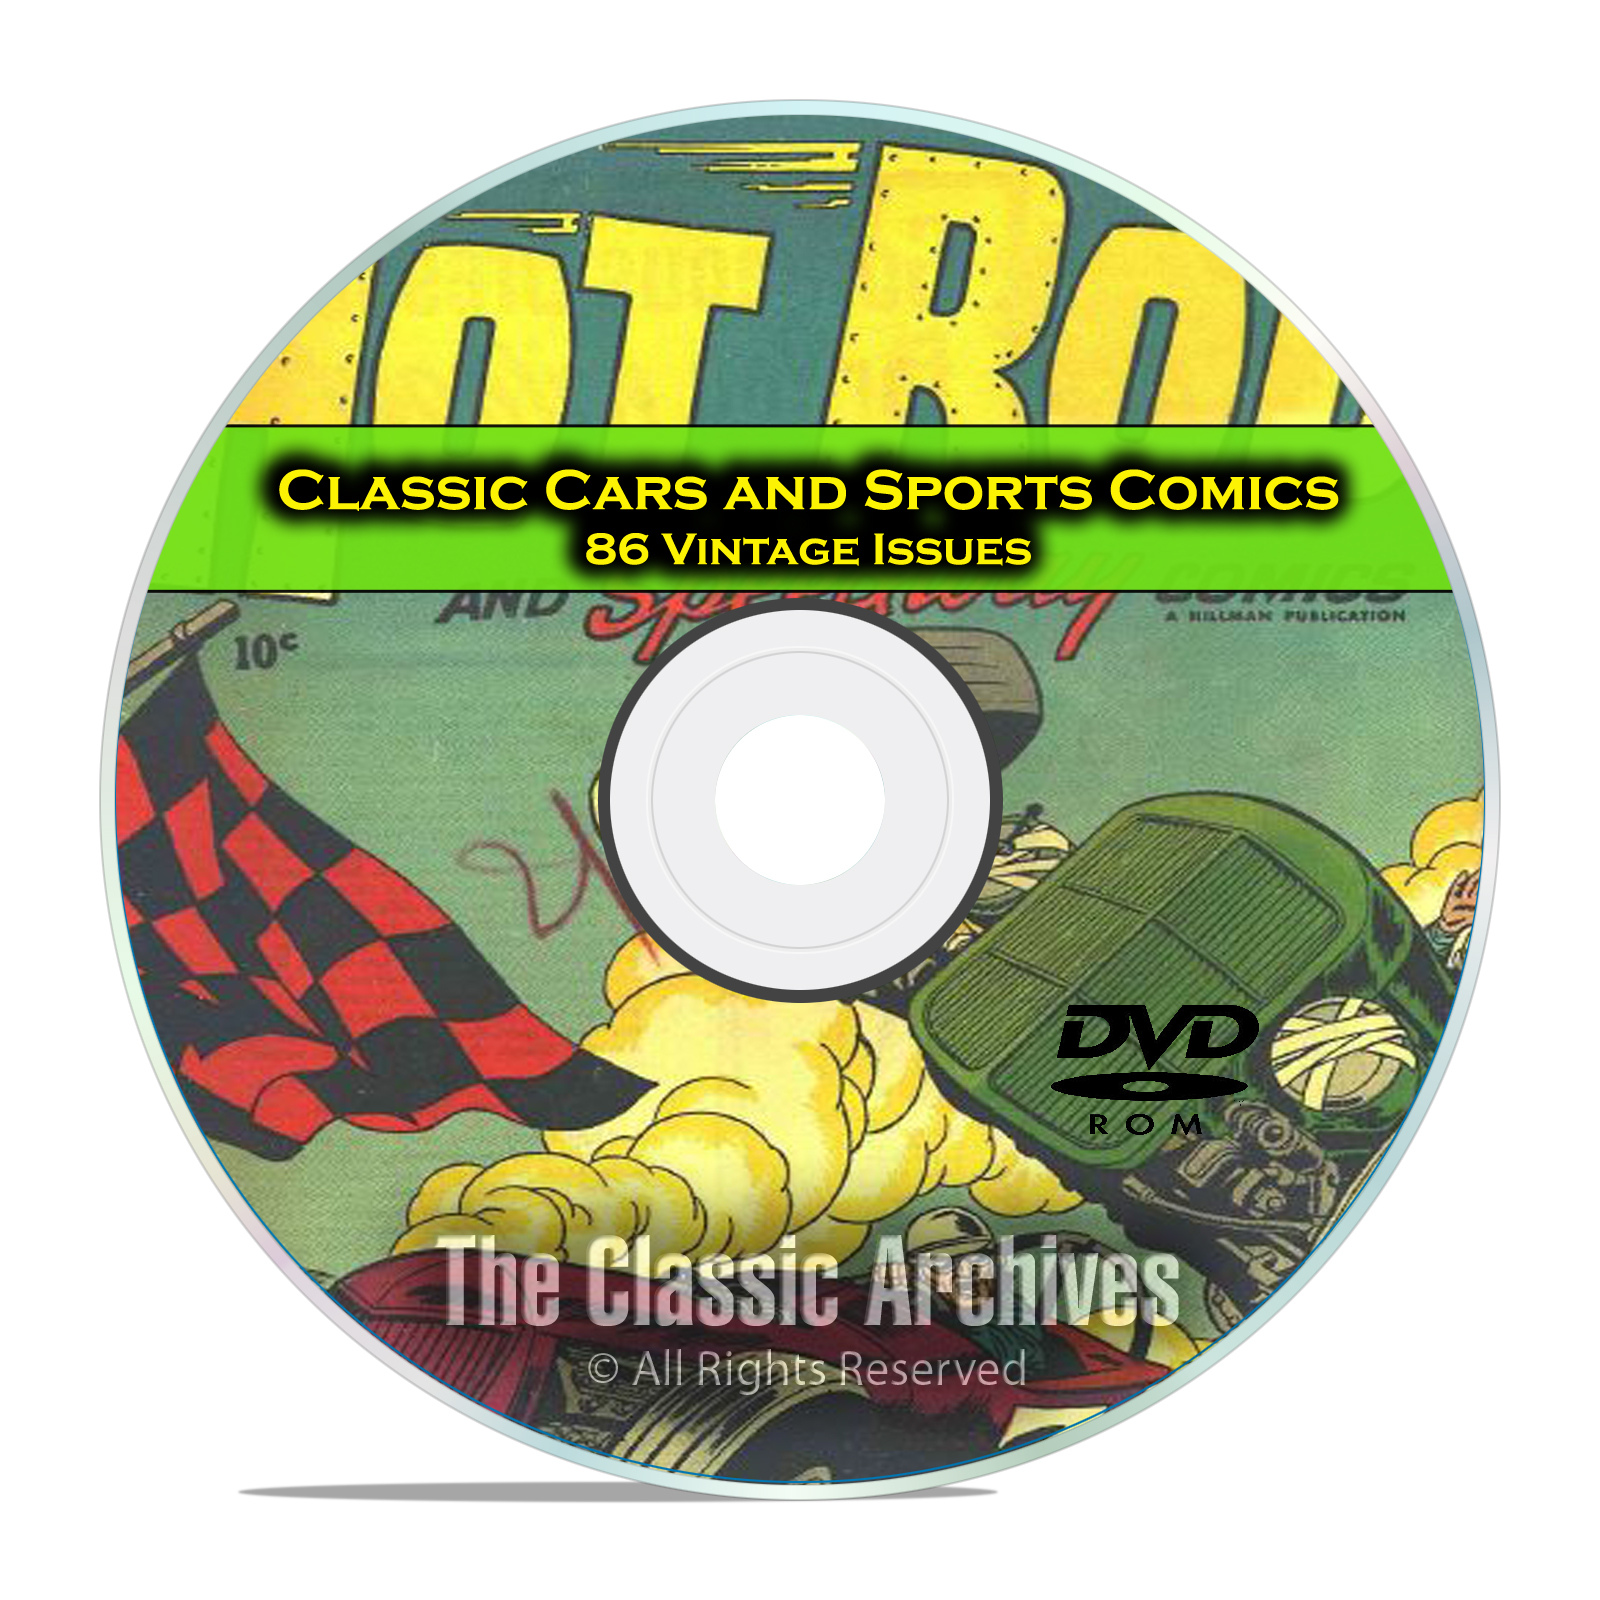 Classic Car Comics, Sports Comics, 86 Vintage Issues, Golden Age Comics DVD - Click Image to Close